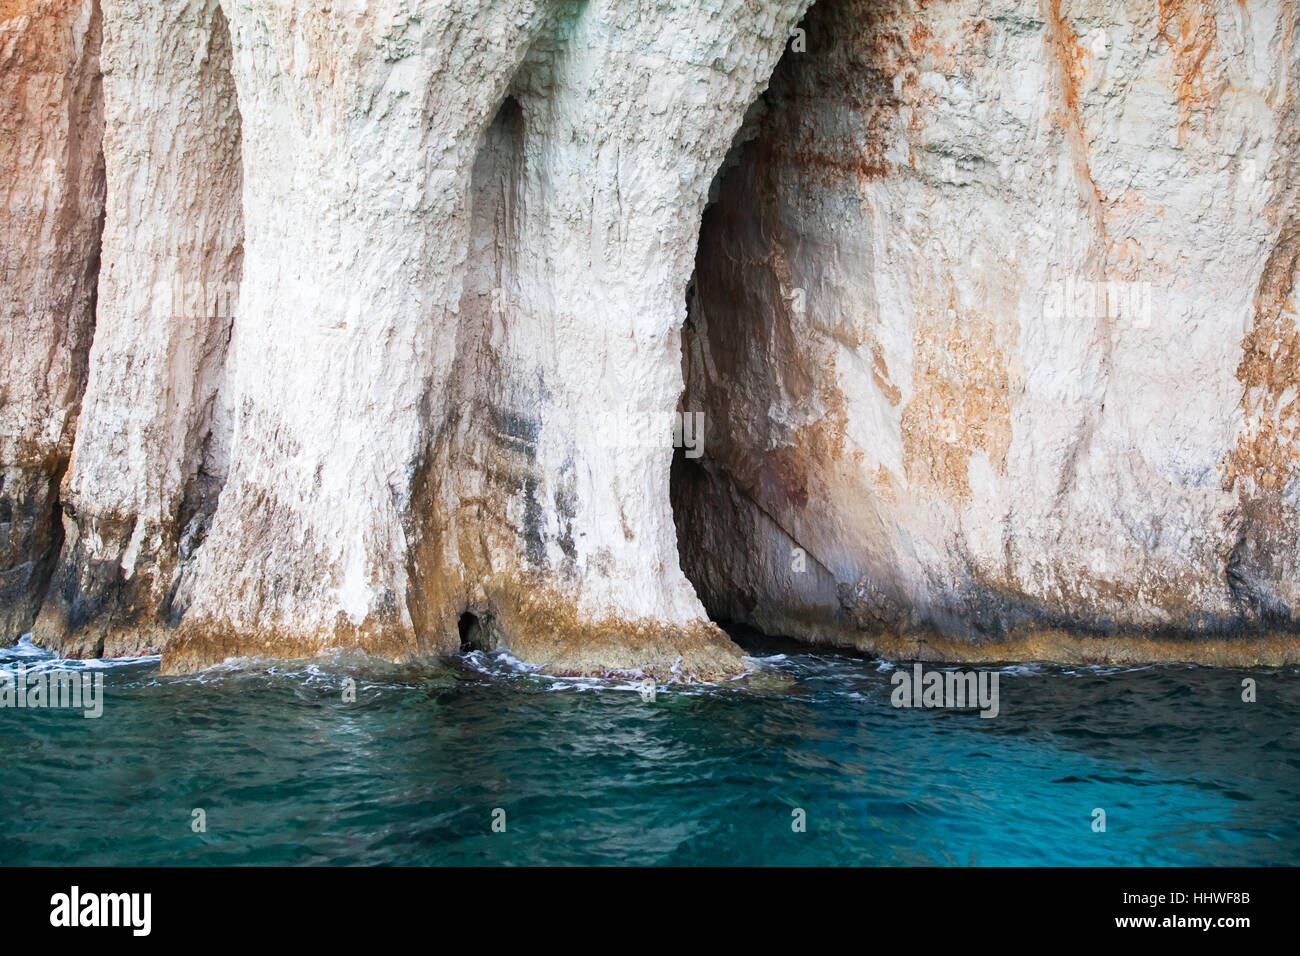 Rocce costiere dell'isola greca di Zante con grotte e archi in pietra Foto Stock